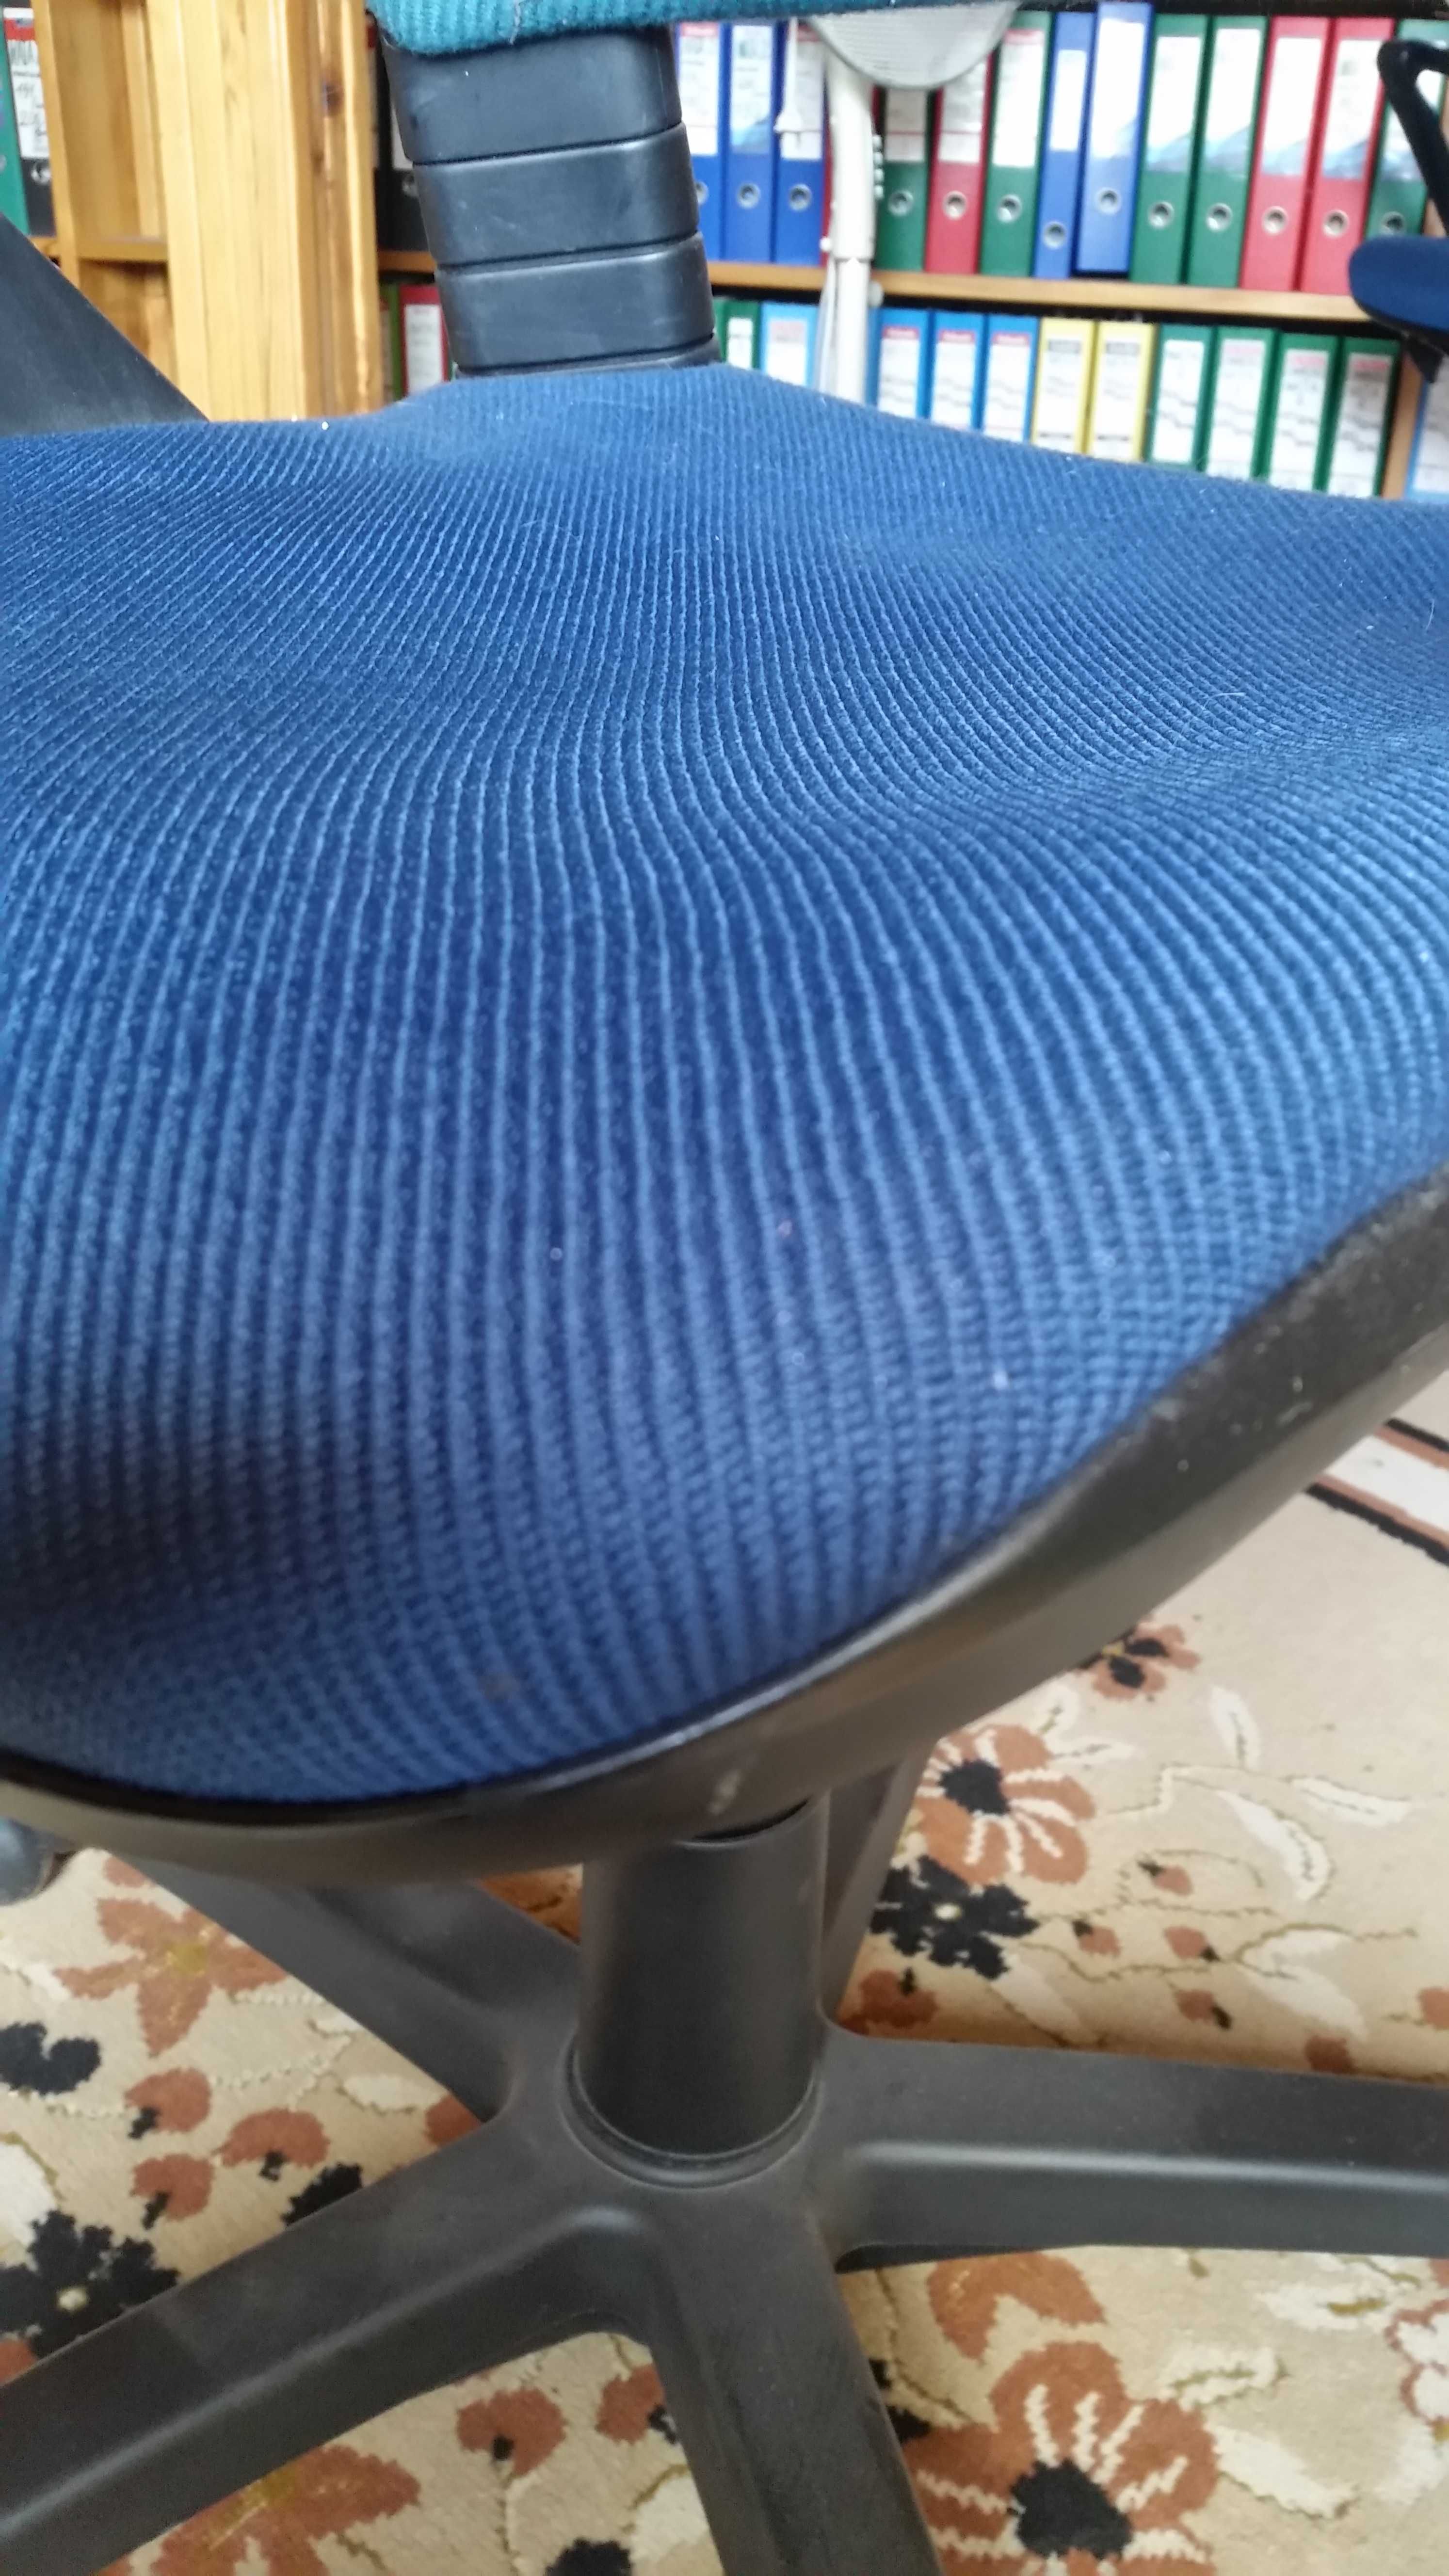 krzesła komputerowe  niebieskie dwa